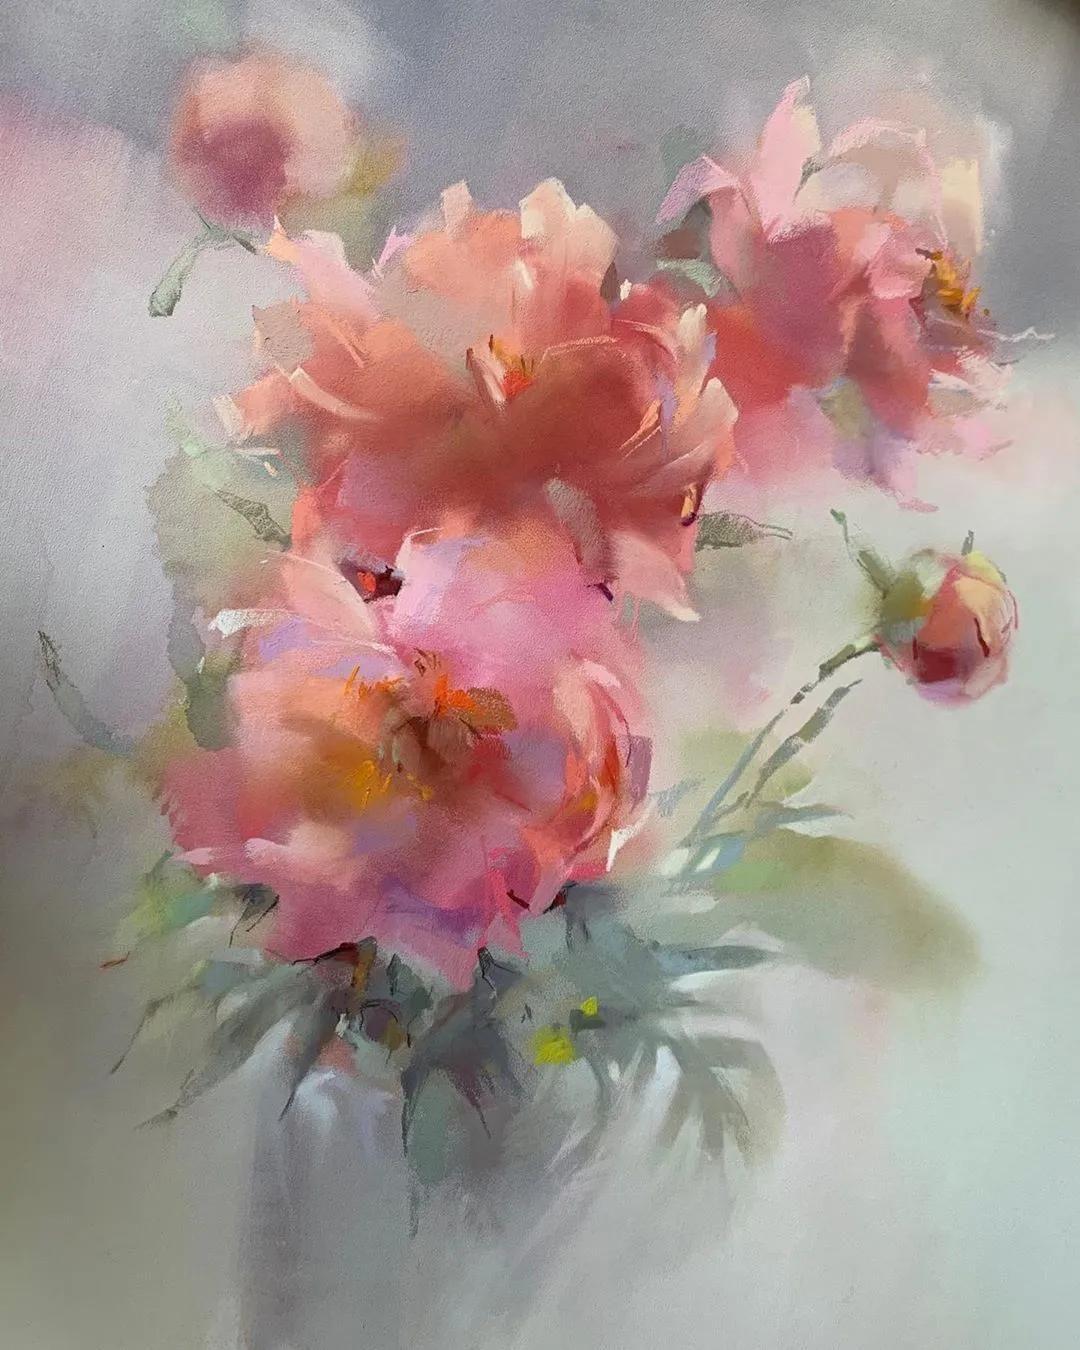 今天我们来欣赏一下法国画家olena duchene的色粉花卉和静物